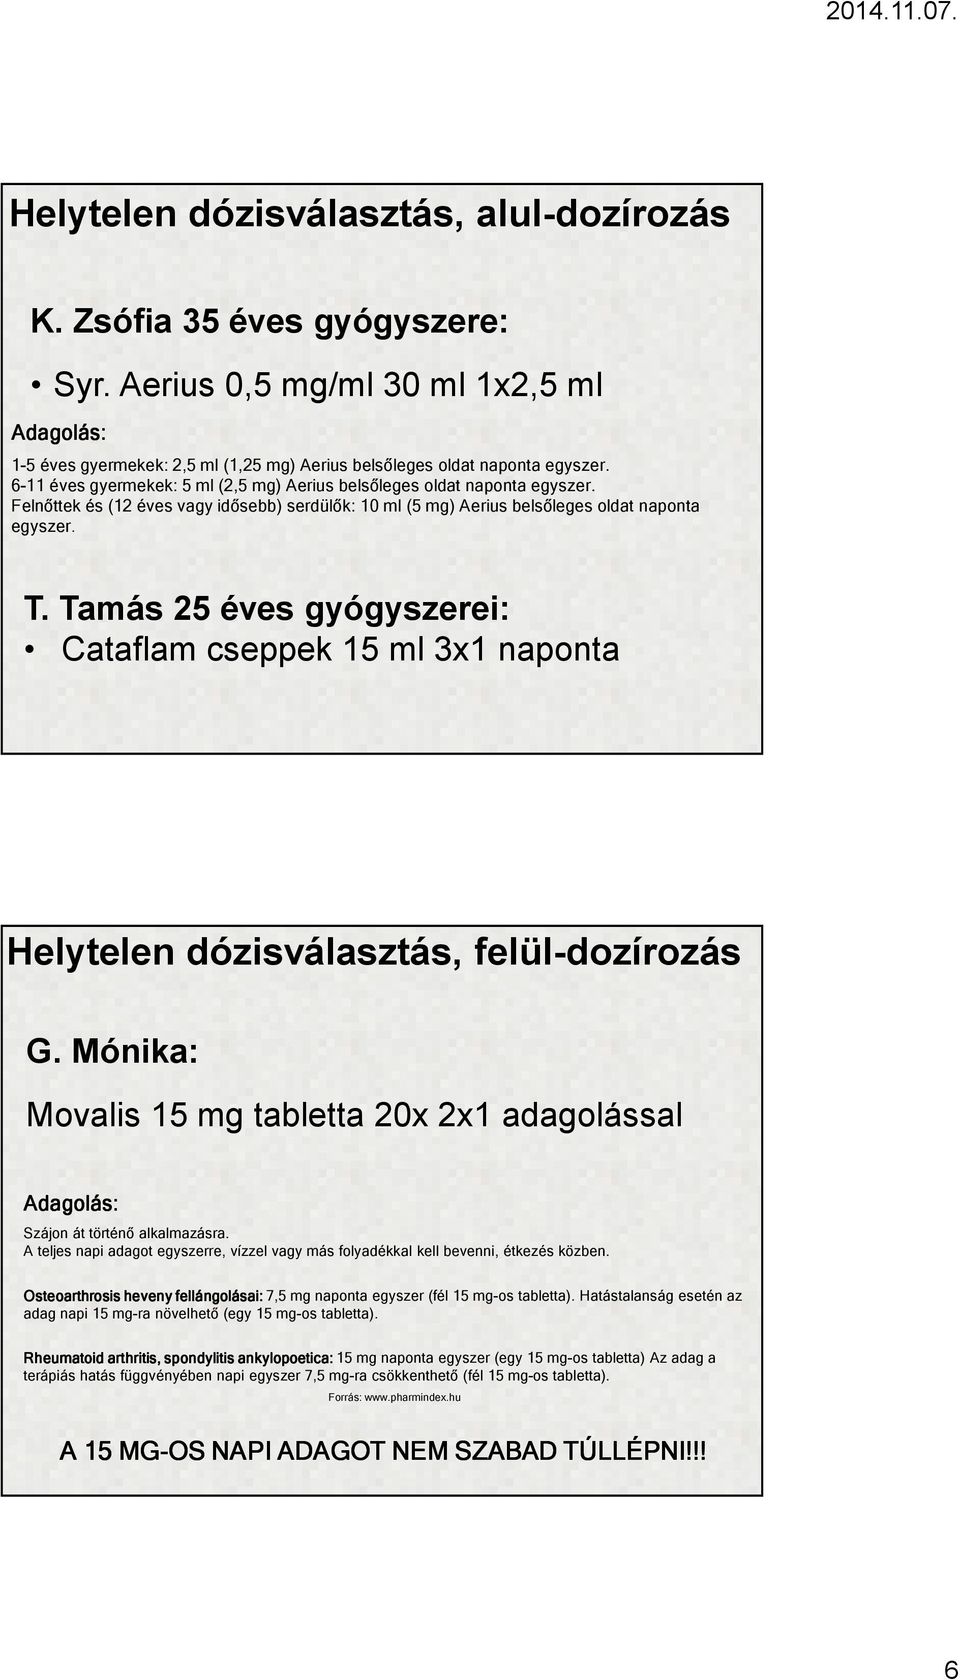 Tamás 25 éves gyógyszerei: Cataflam cseppek 15 ml 3x1 naponta Helytelen dózisválasztás, felül-dozírozás G. Mónika: Movalis 15 mg tabletta 20x 2x1 adagolással Adagolás: Szájon át történő alkalmazásra.